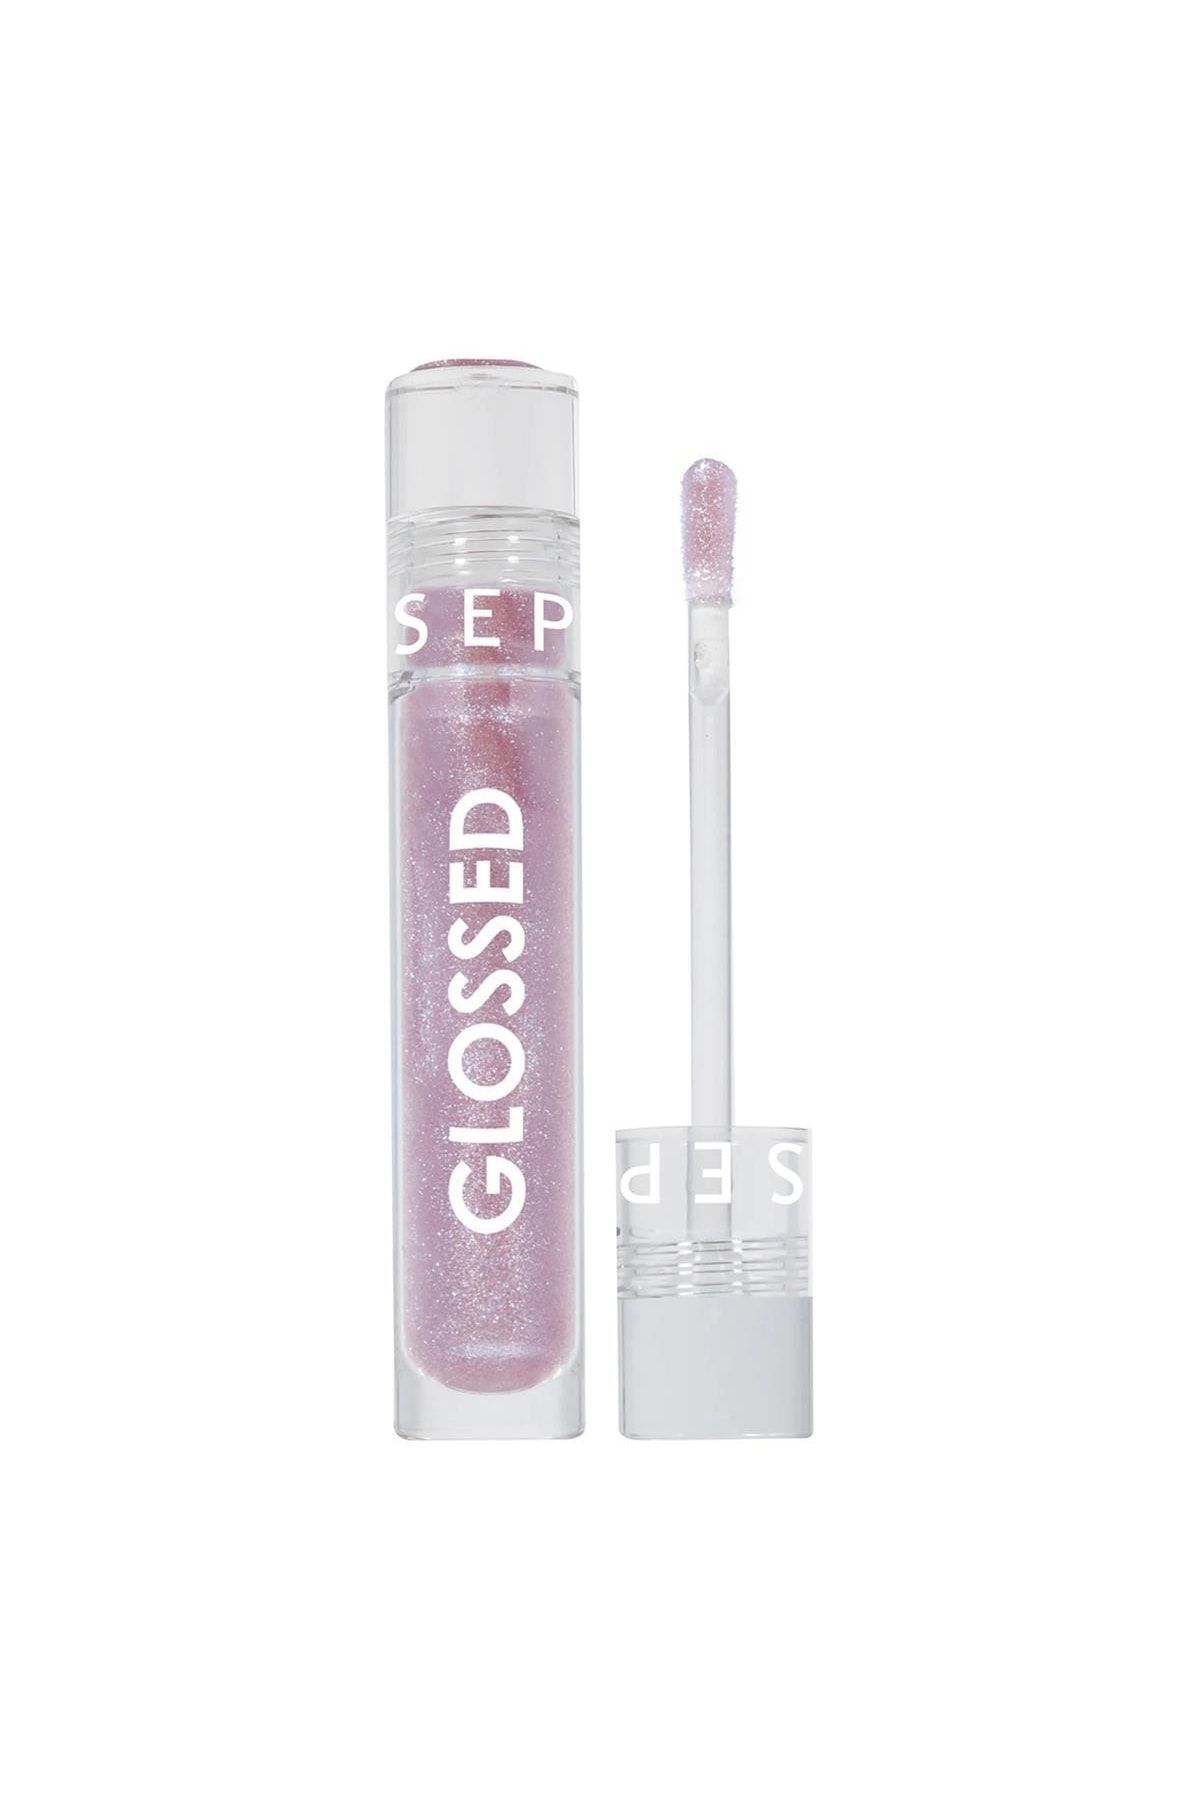 Sephora Glossed Lip Gloss 10. Wild - Glitter Finish (5ML)